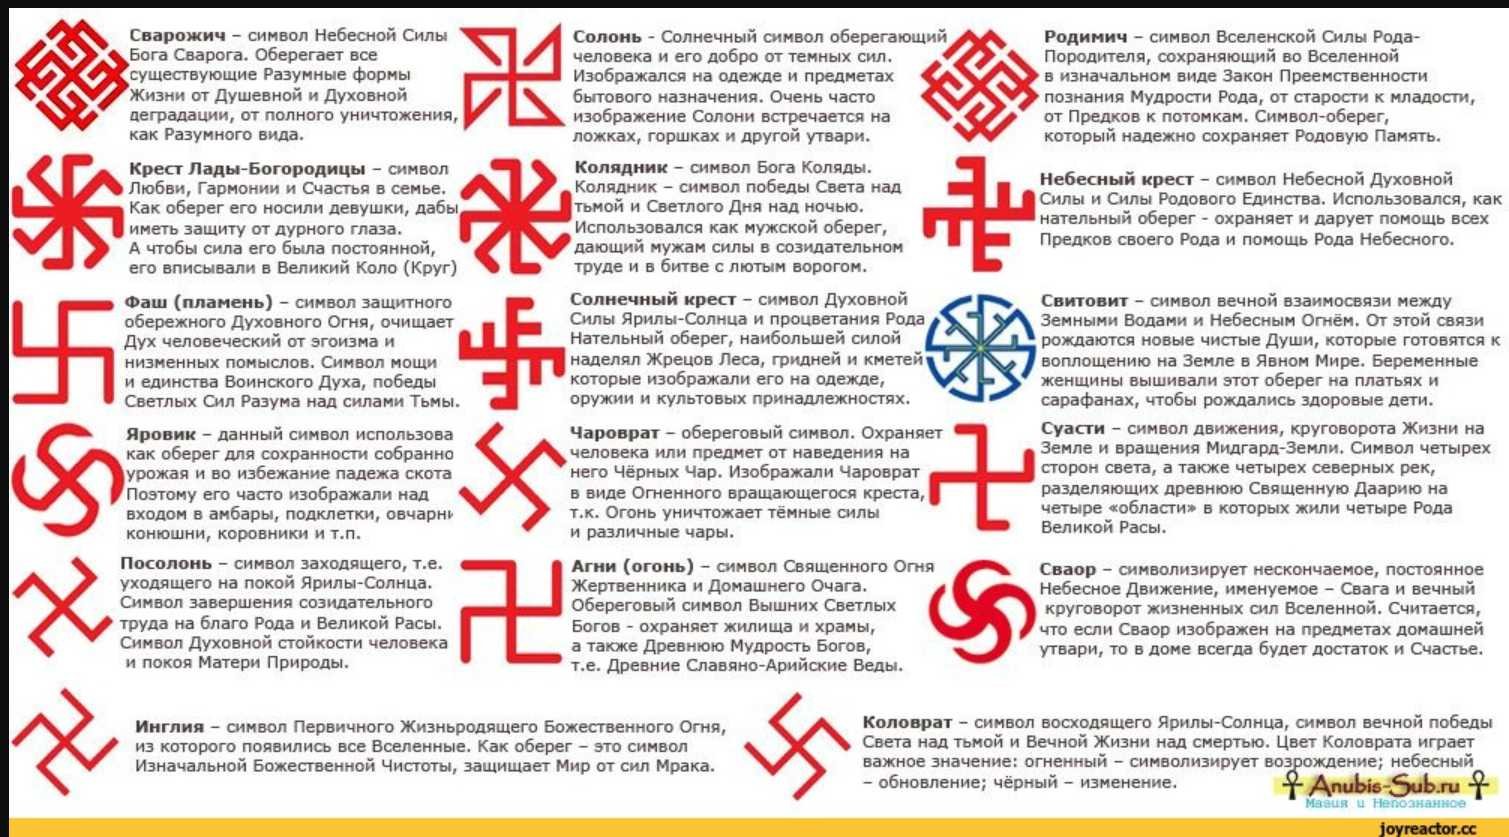 Коловрат значение оберега. Солярные славянские символы-обереги. Языческие символы древней Руси обереги. Солярные символы славян обереги.